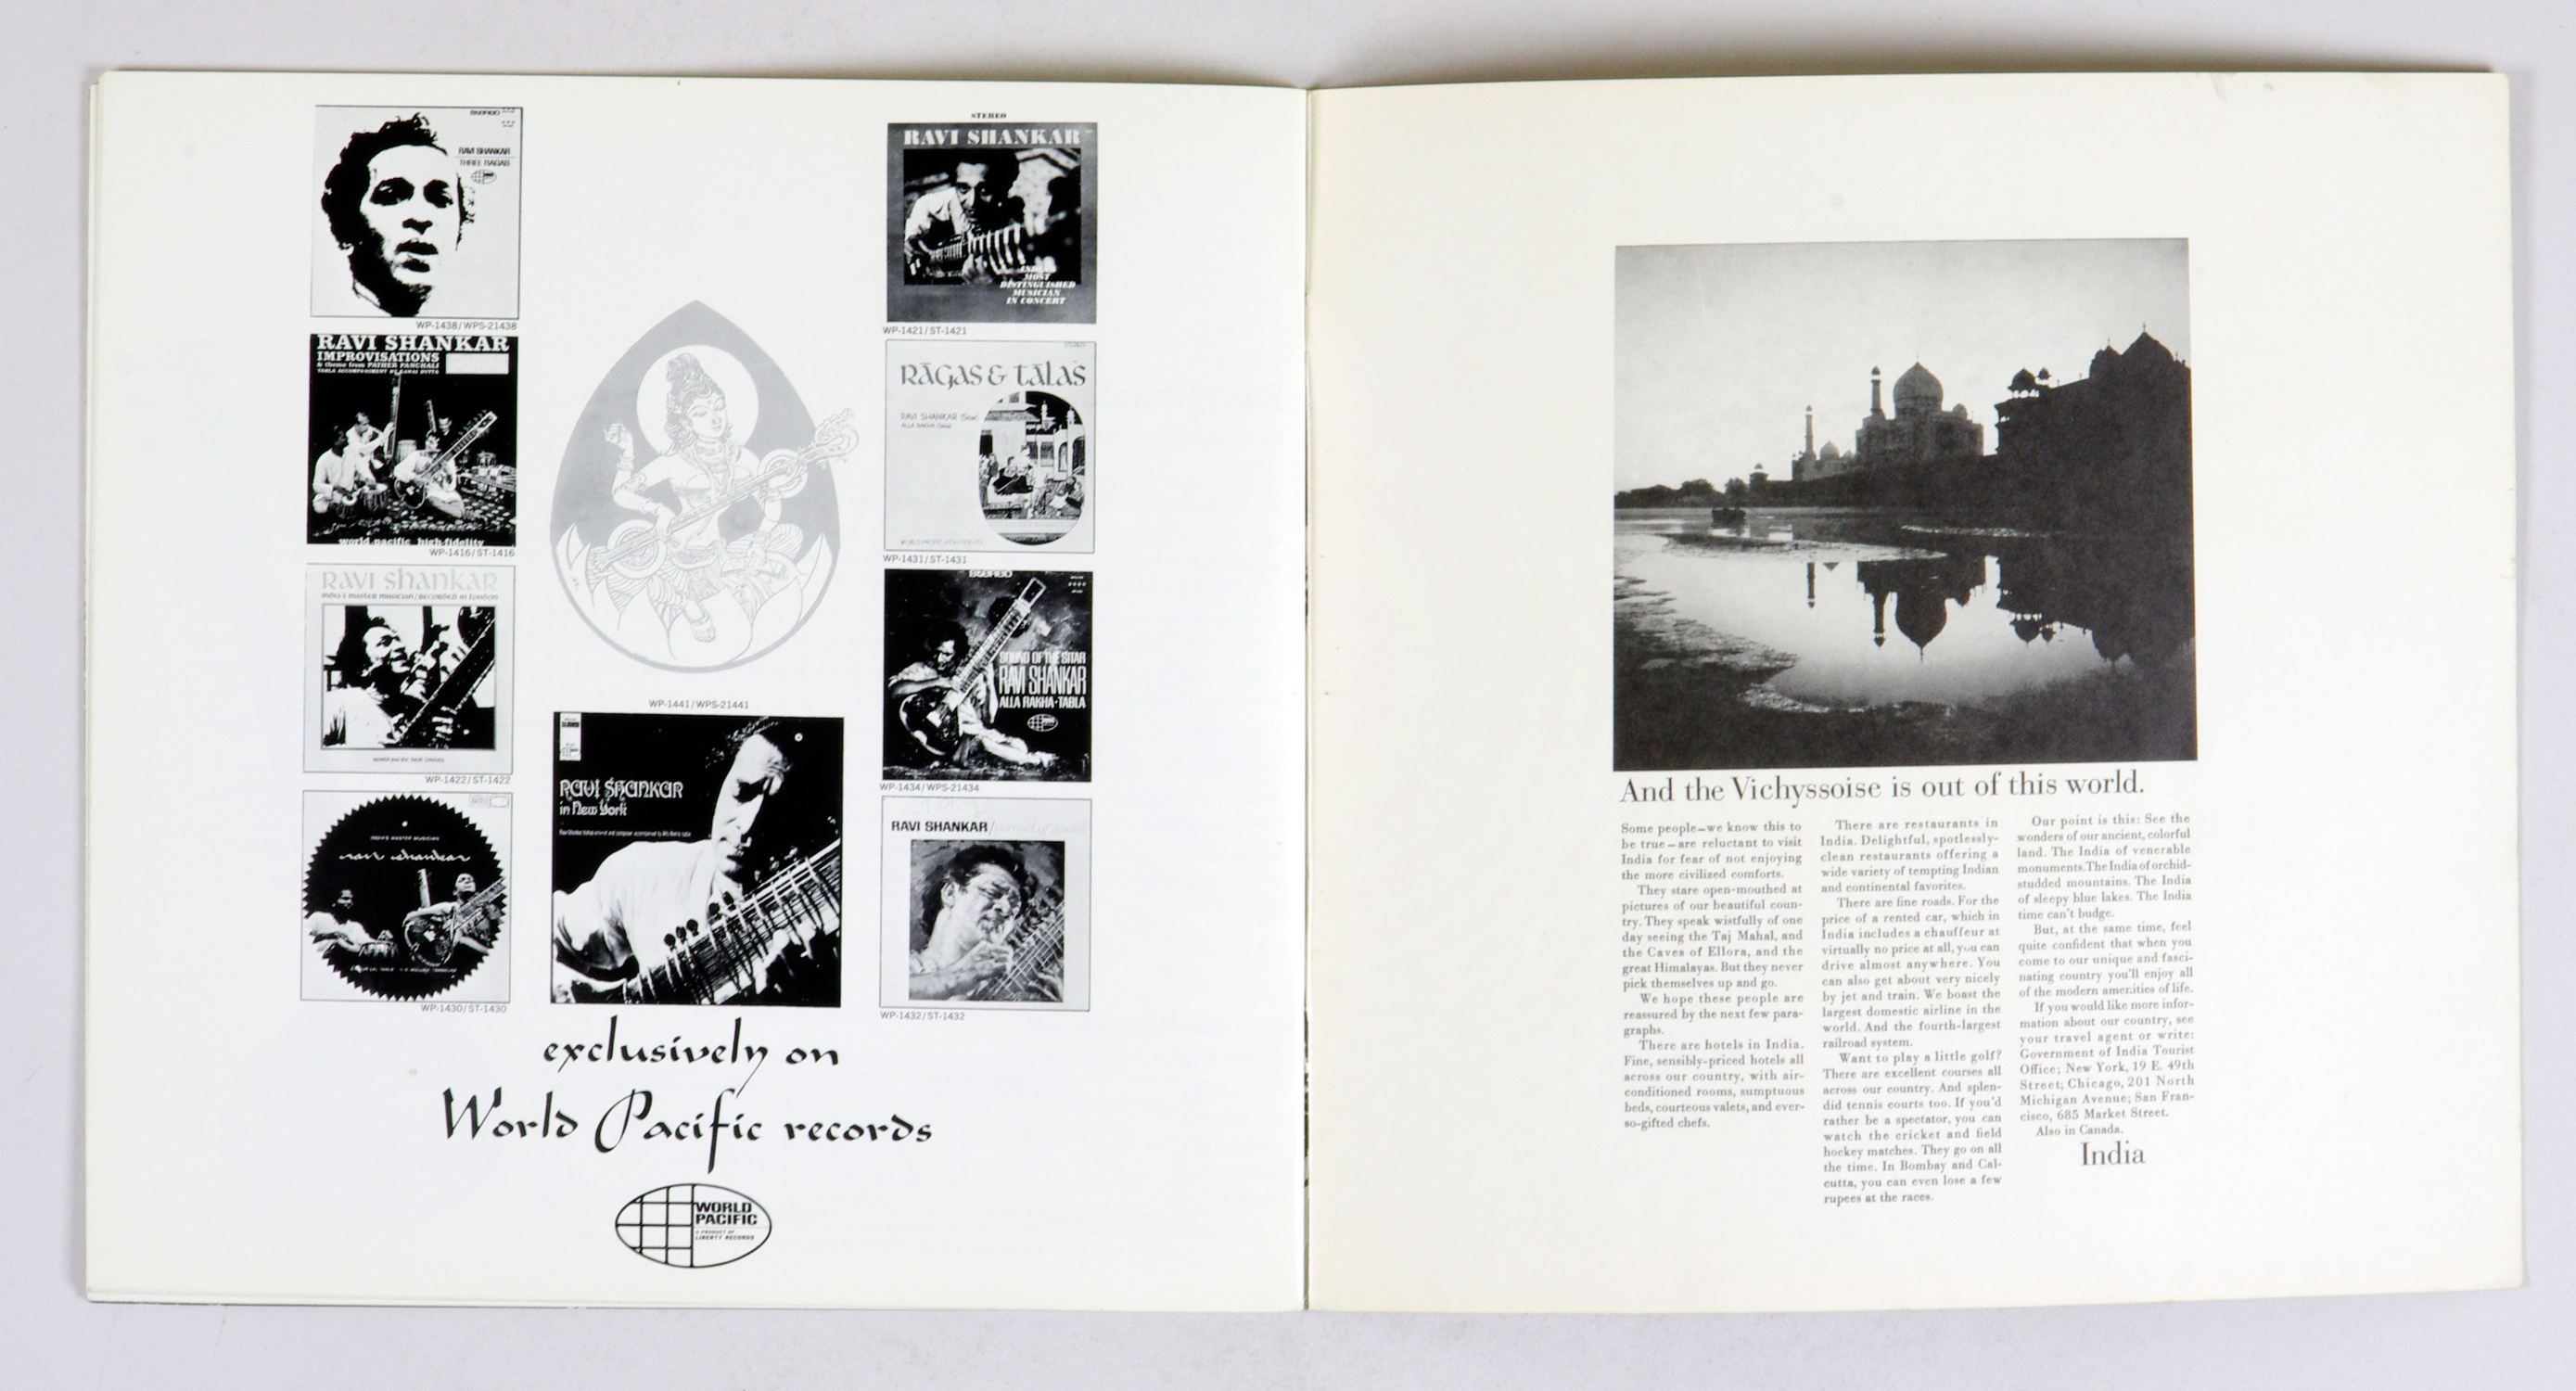 Ravi Shankar 1967 Tour Program Book